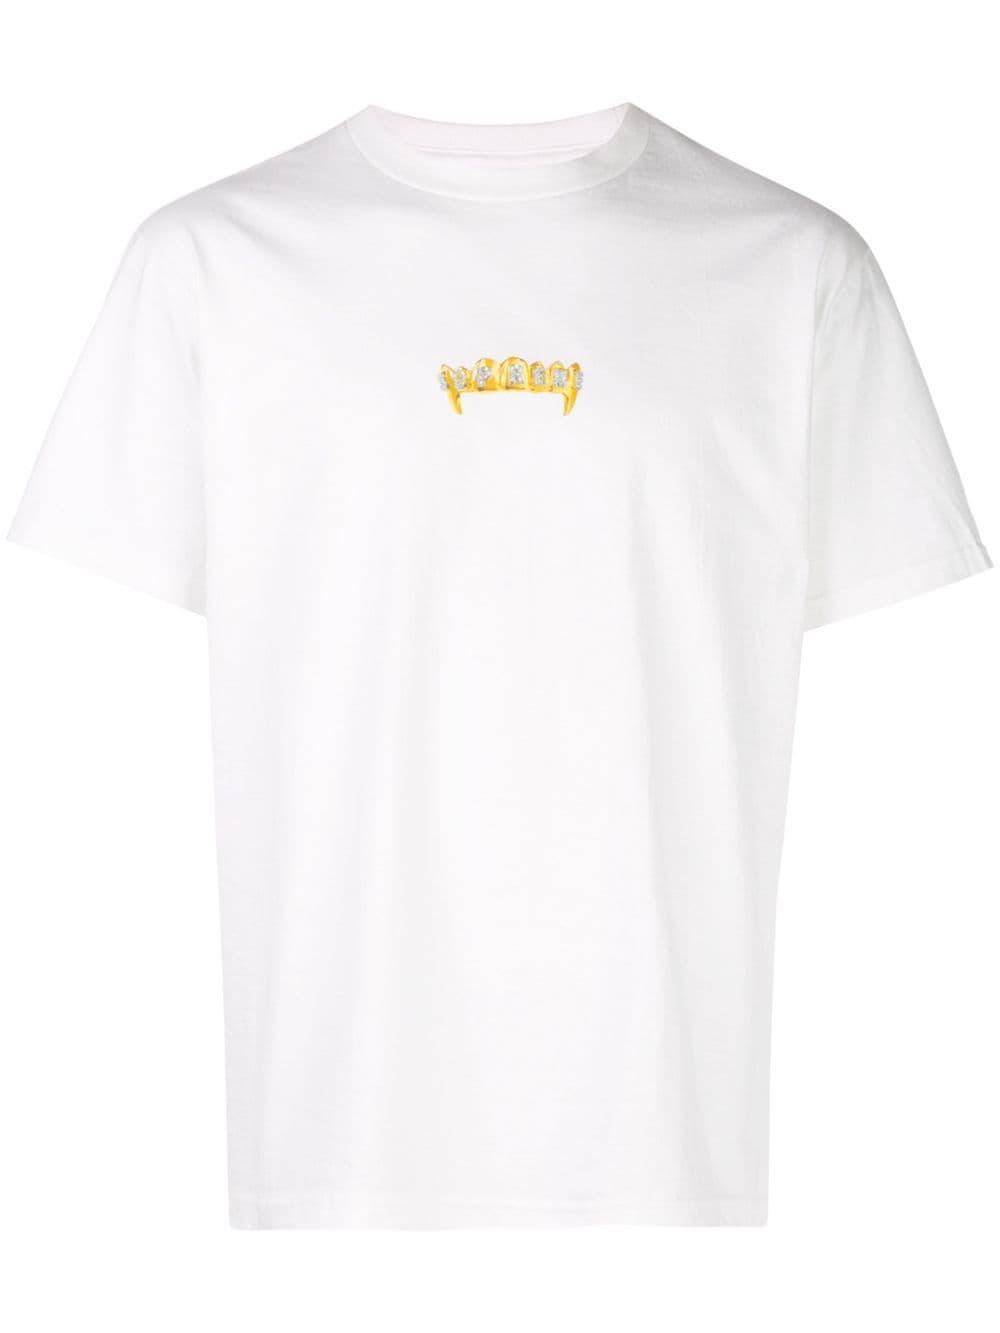 Supreme Logo Print T-shirt in White for Men - Lyst